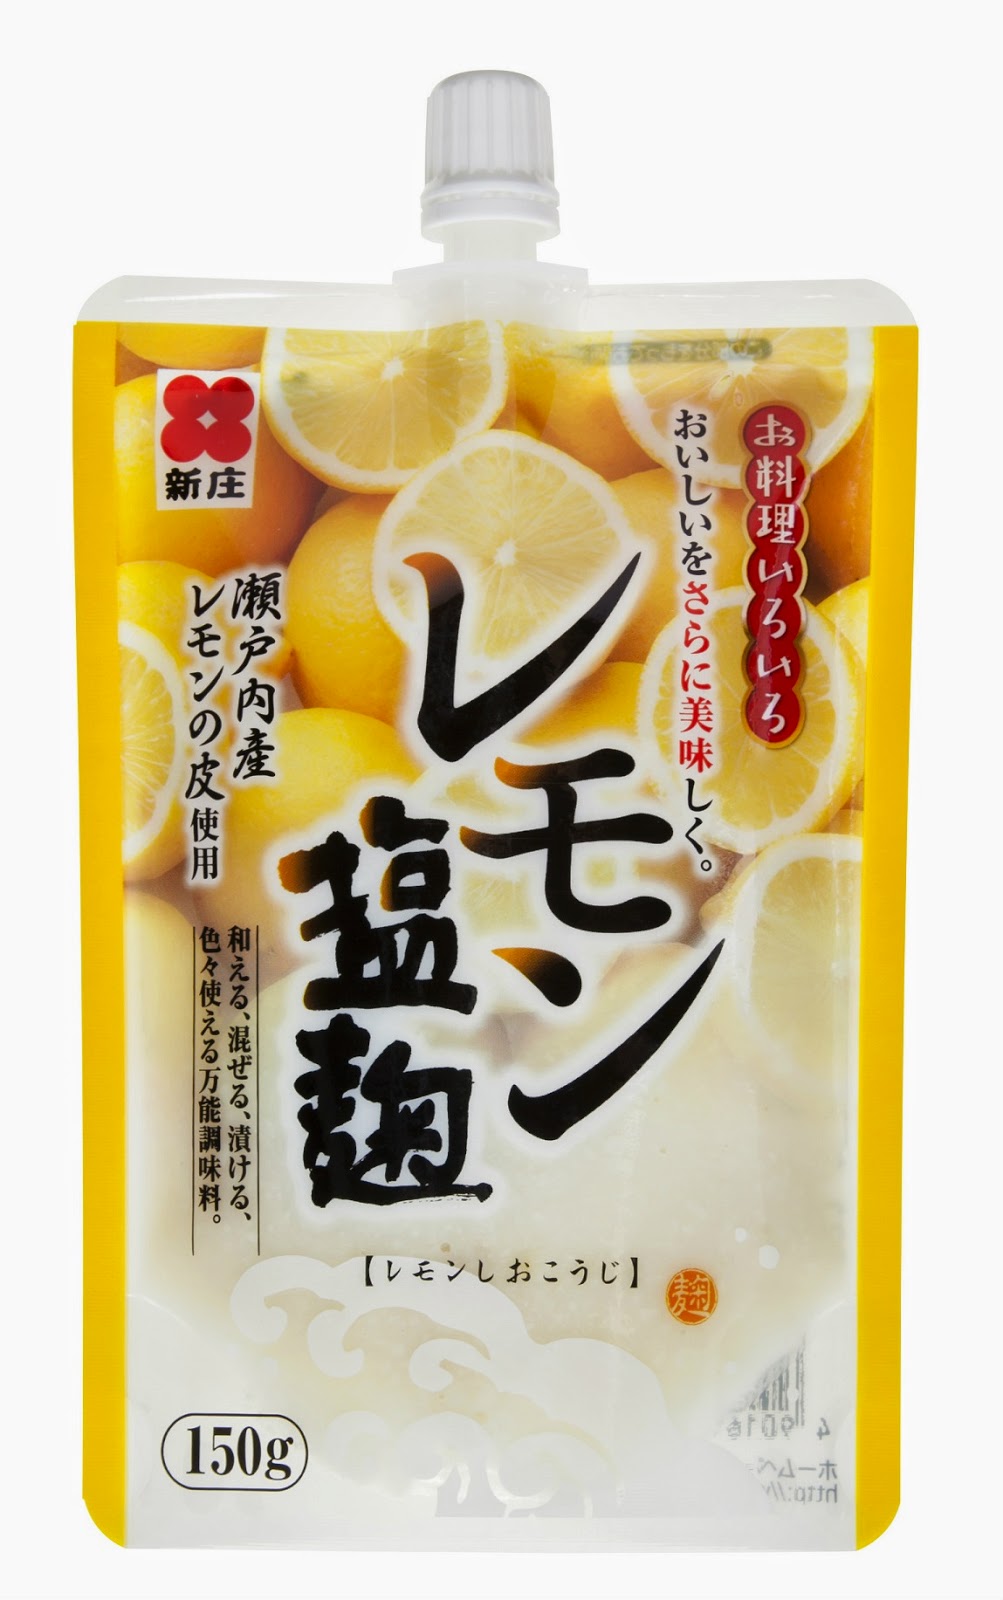 新庄みそ レモン塩麹 スパウトタイプ 150g 瀬戸内産レモンの皮使用